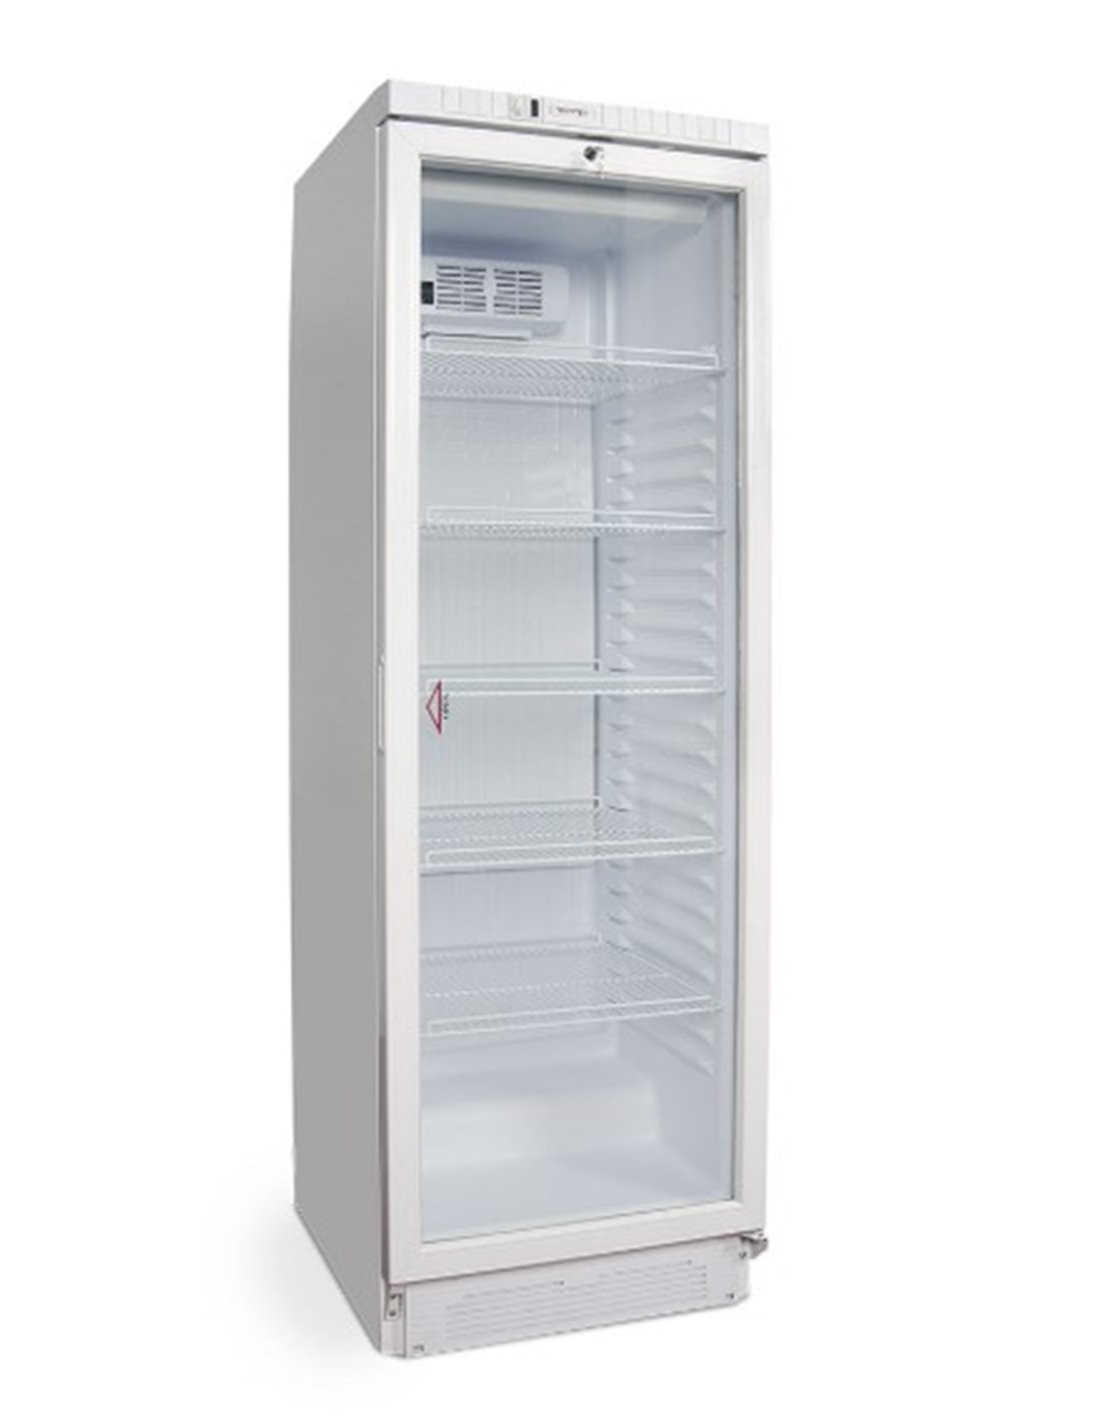 Armario frigorífico pequeño Edenox APS-251 blanco 600x585x855 mm